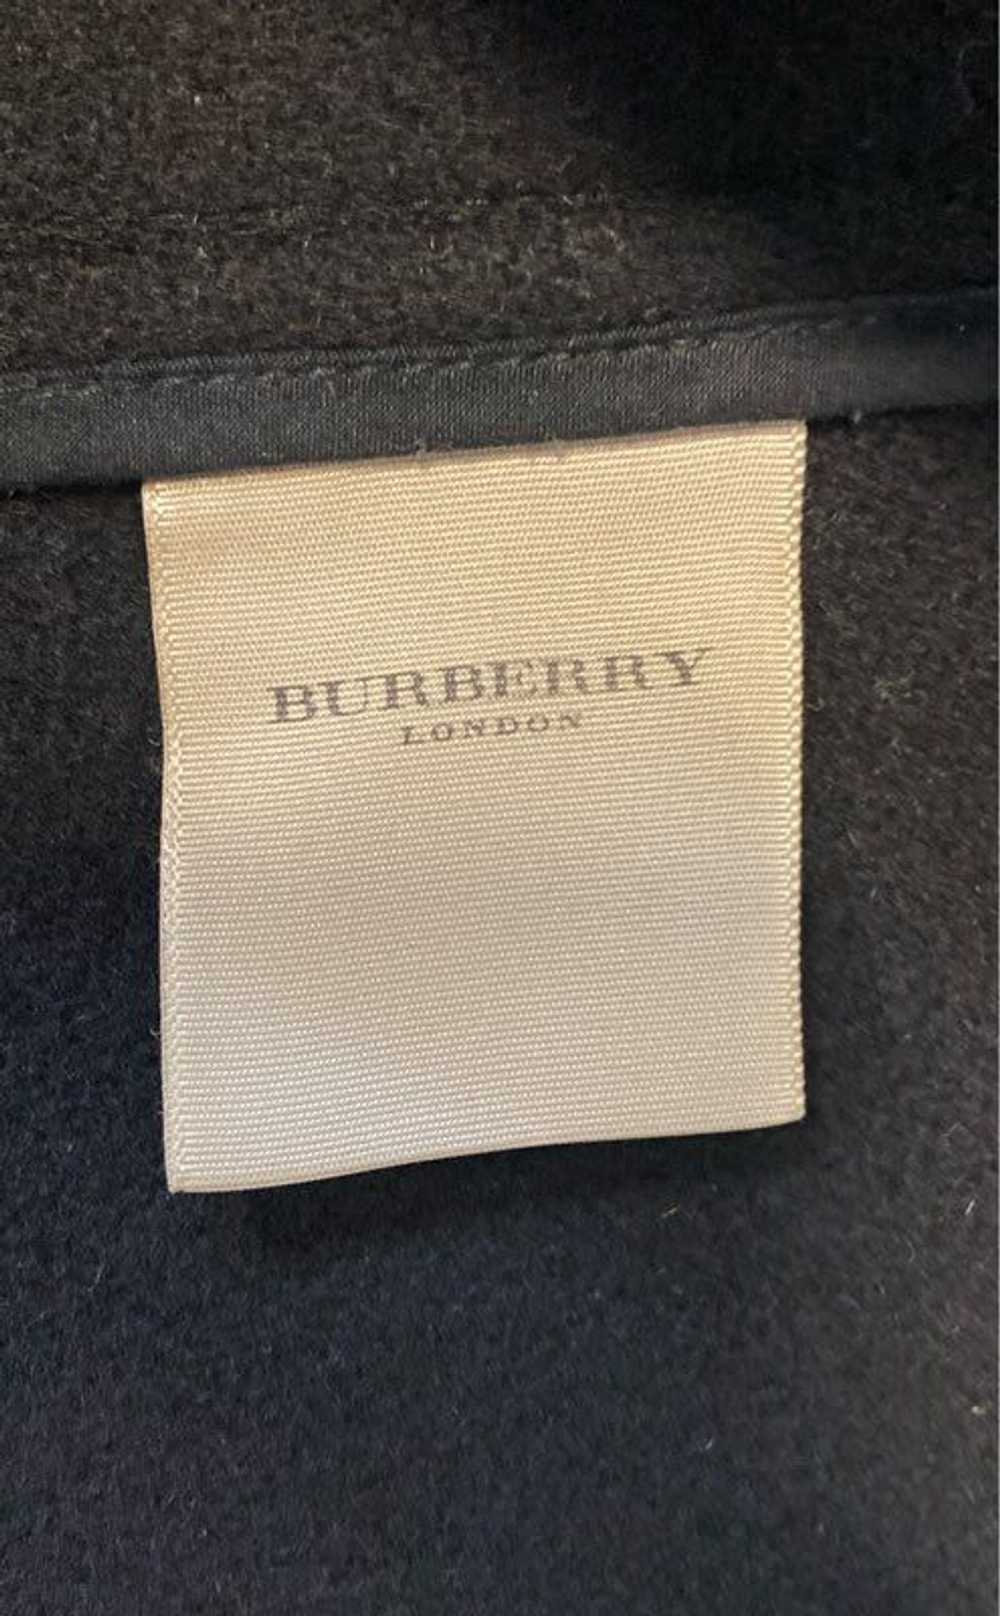 Burberry London Black Jacket - Size 6 - image 5